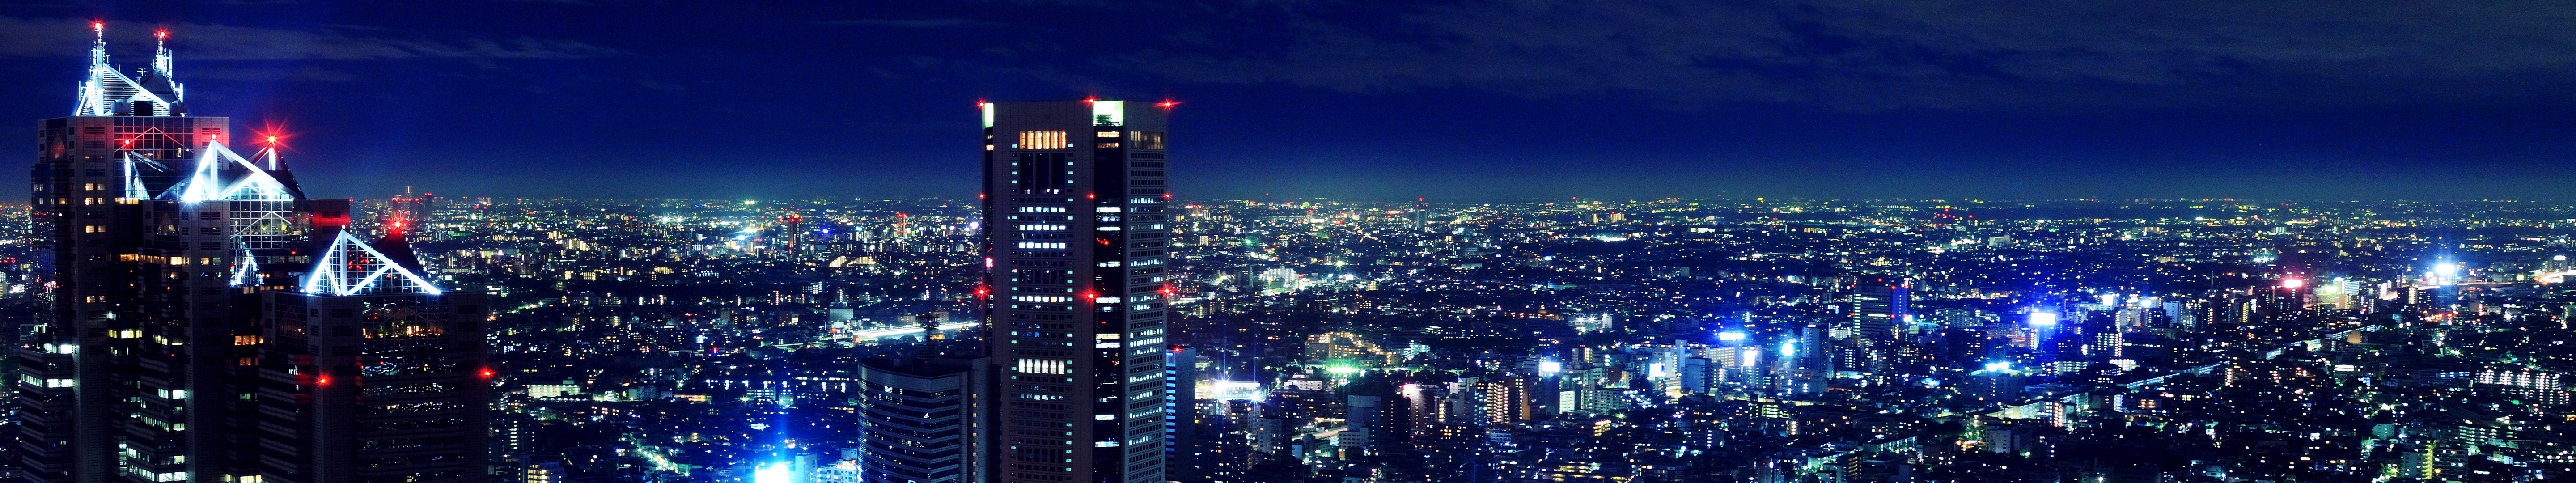 Bức hình nền 5760x1080 về Tokyo sẽ đưa bạn đến với một thế giới đầy ấn tượng và phong cảnh đa dạng. Bạn sẽ được nhìn thấy các công trình kiến trúc độc đáo, con phố sầm uất và những khu phố đầy nhộn nhịp của đô thị sôi động này.